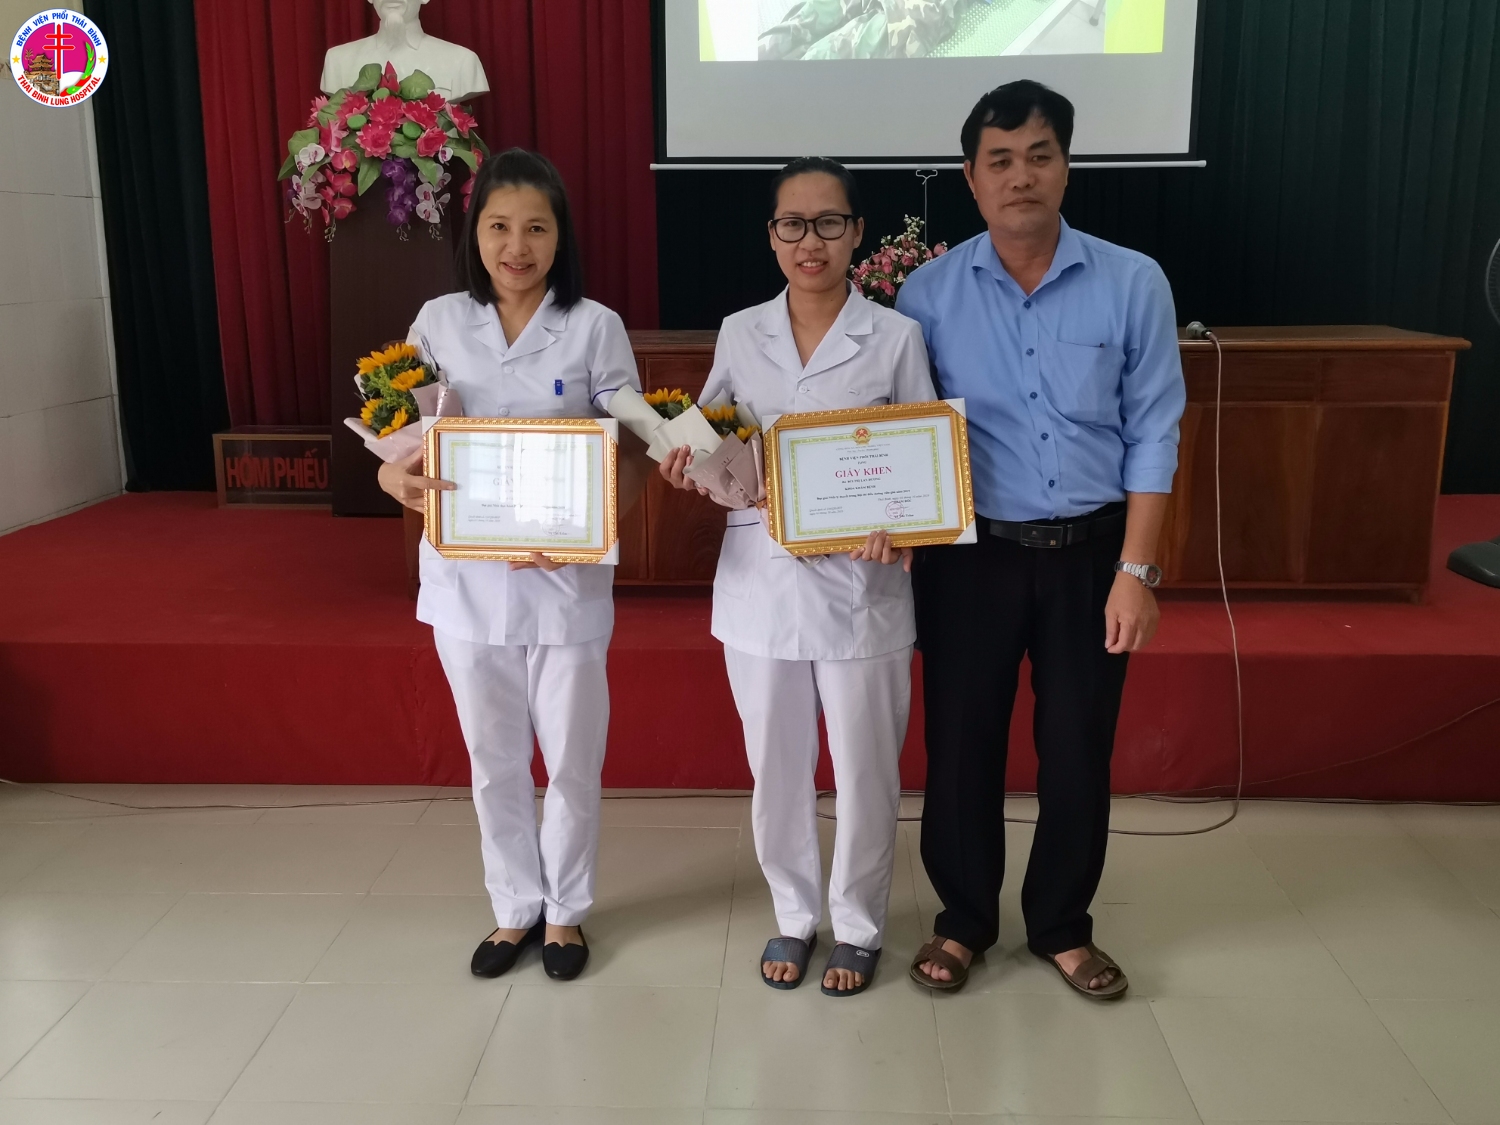 Đồng chí Trần Nam Đích - Phó Giám đốc Bệnh viện trao hai giải cá nhân cho thí sinh 